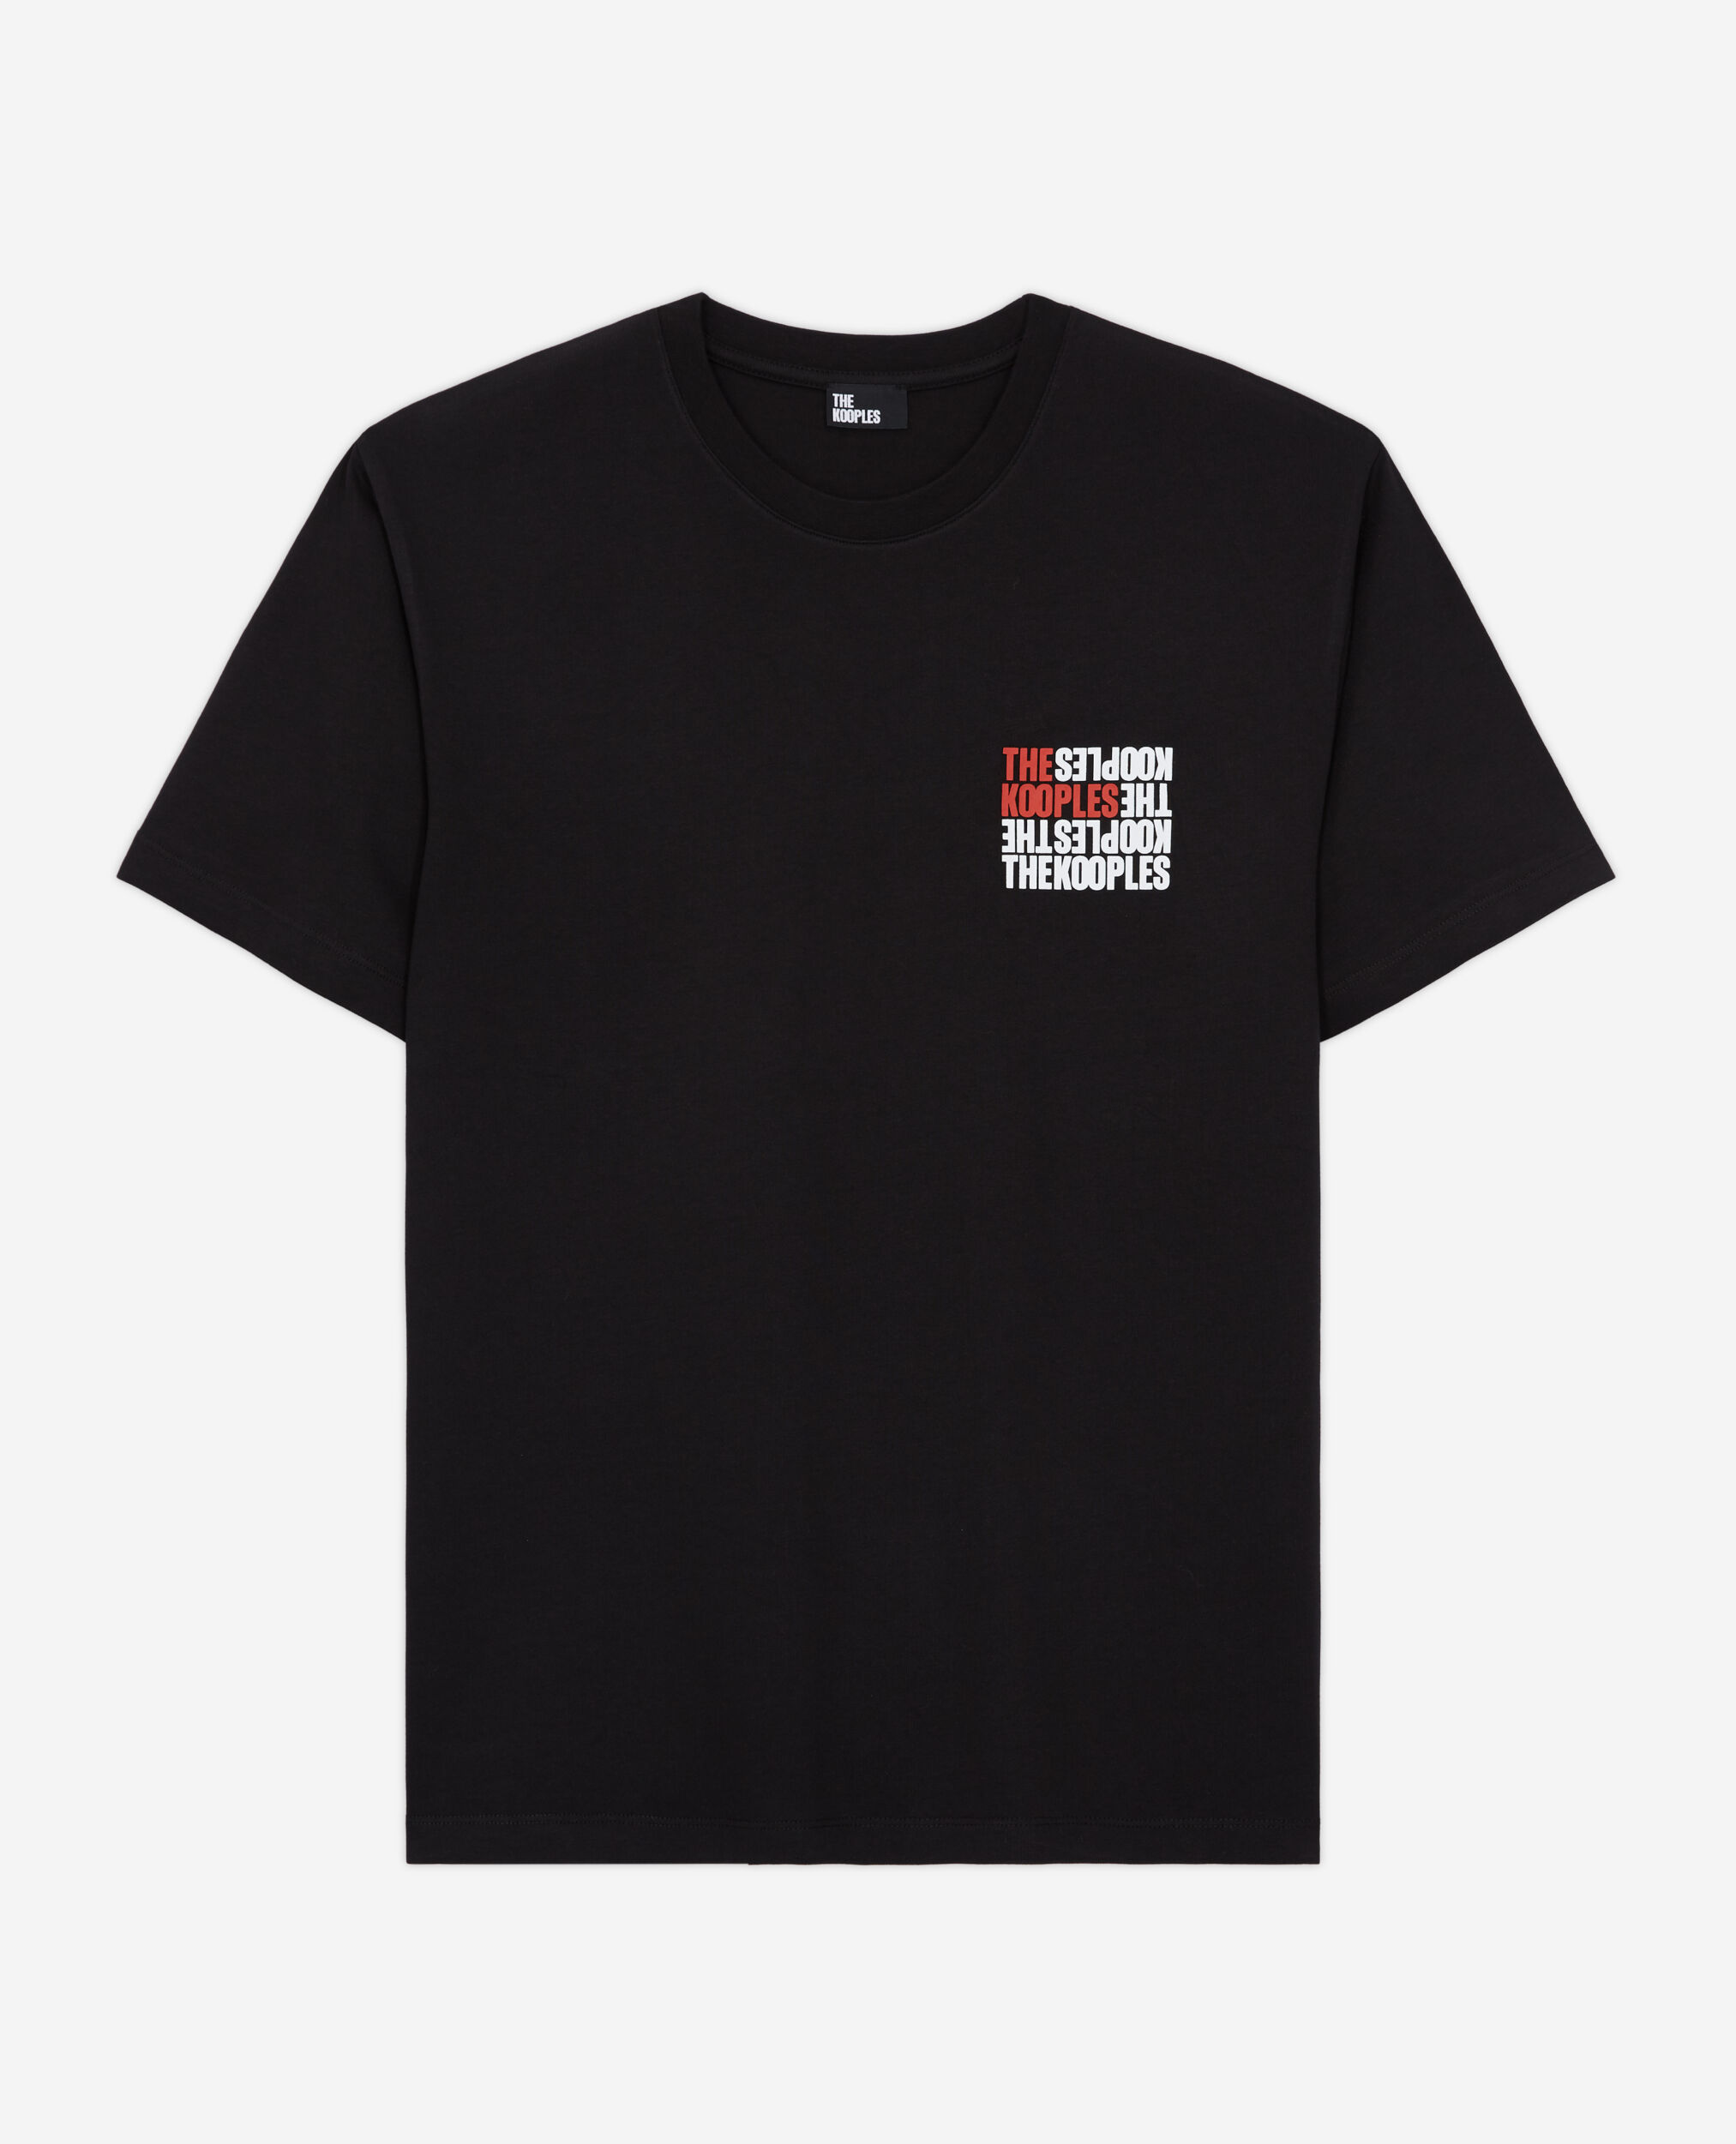 T-shirt Homme logo The Kooples noir, BLACK, hi-res image number null